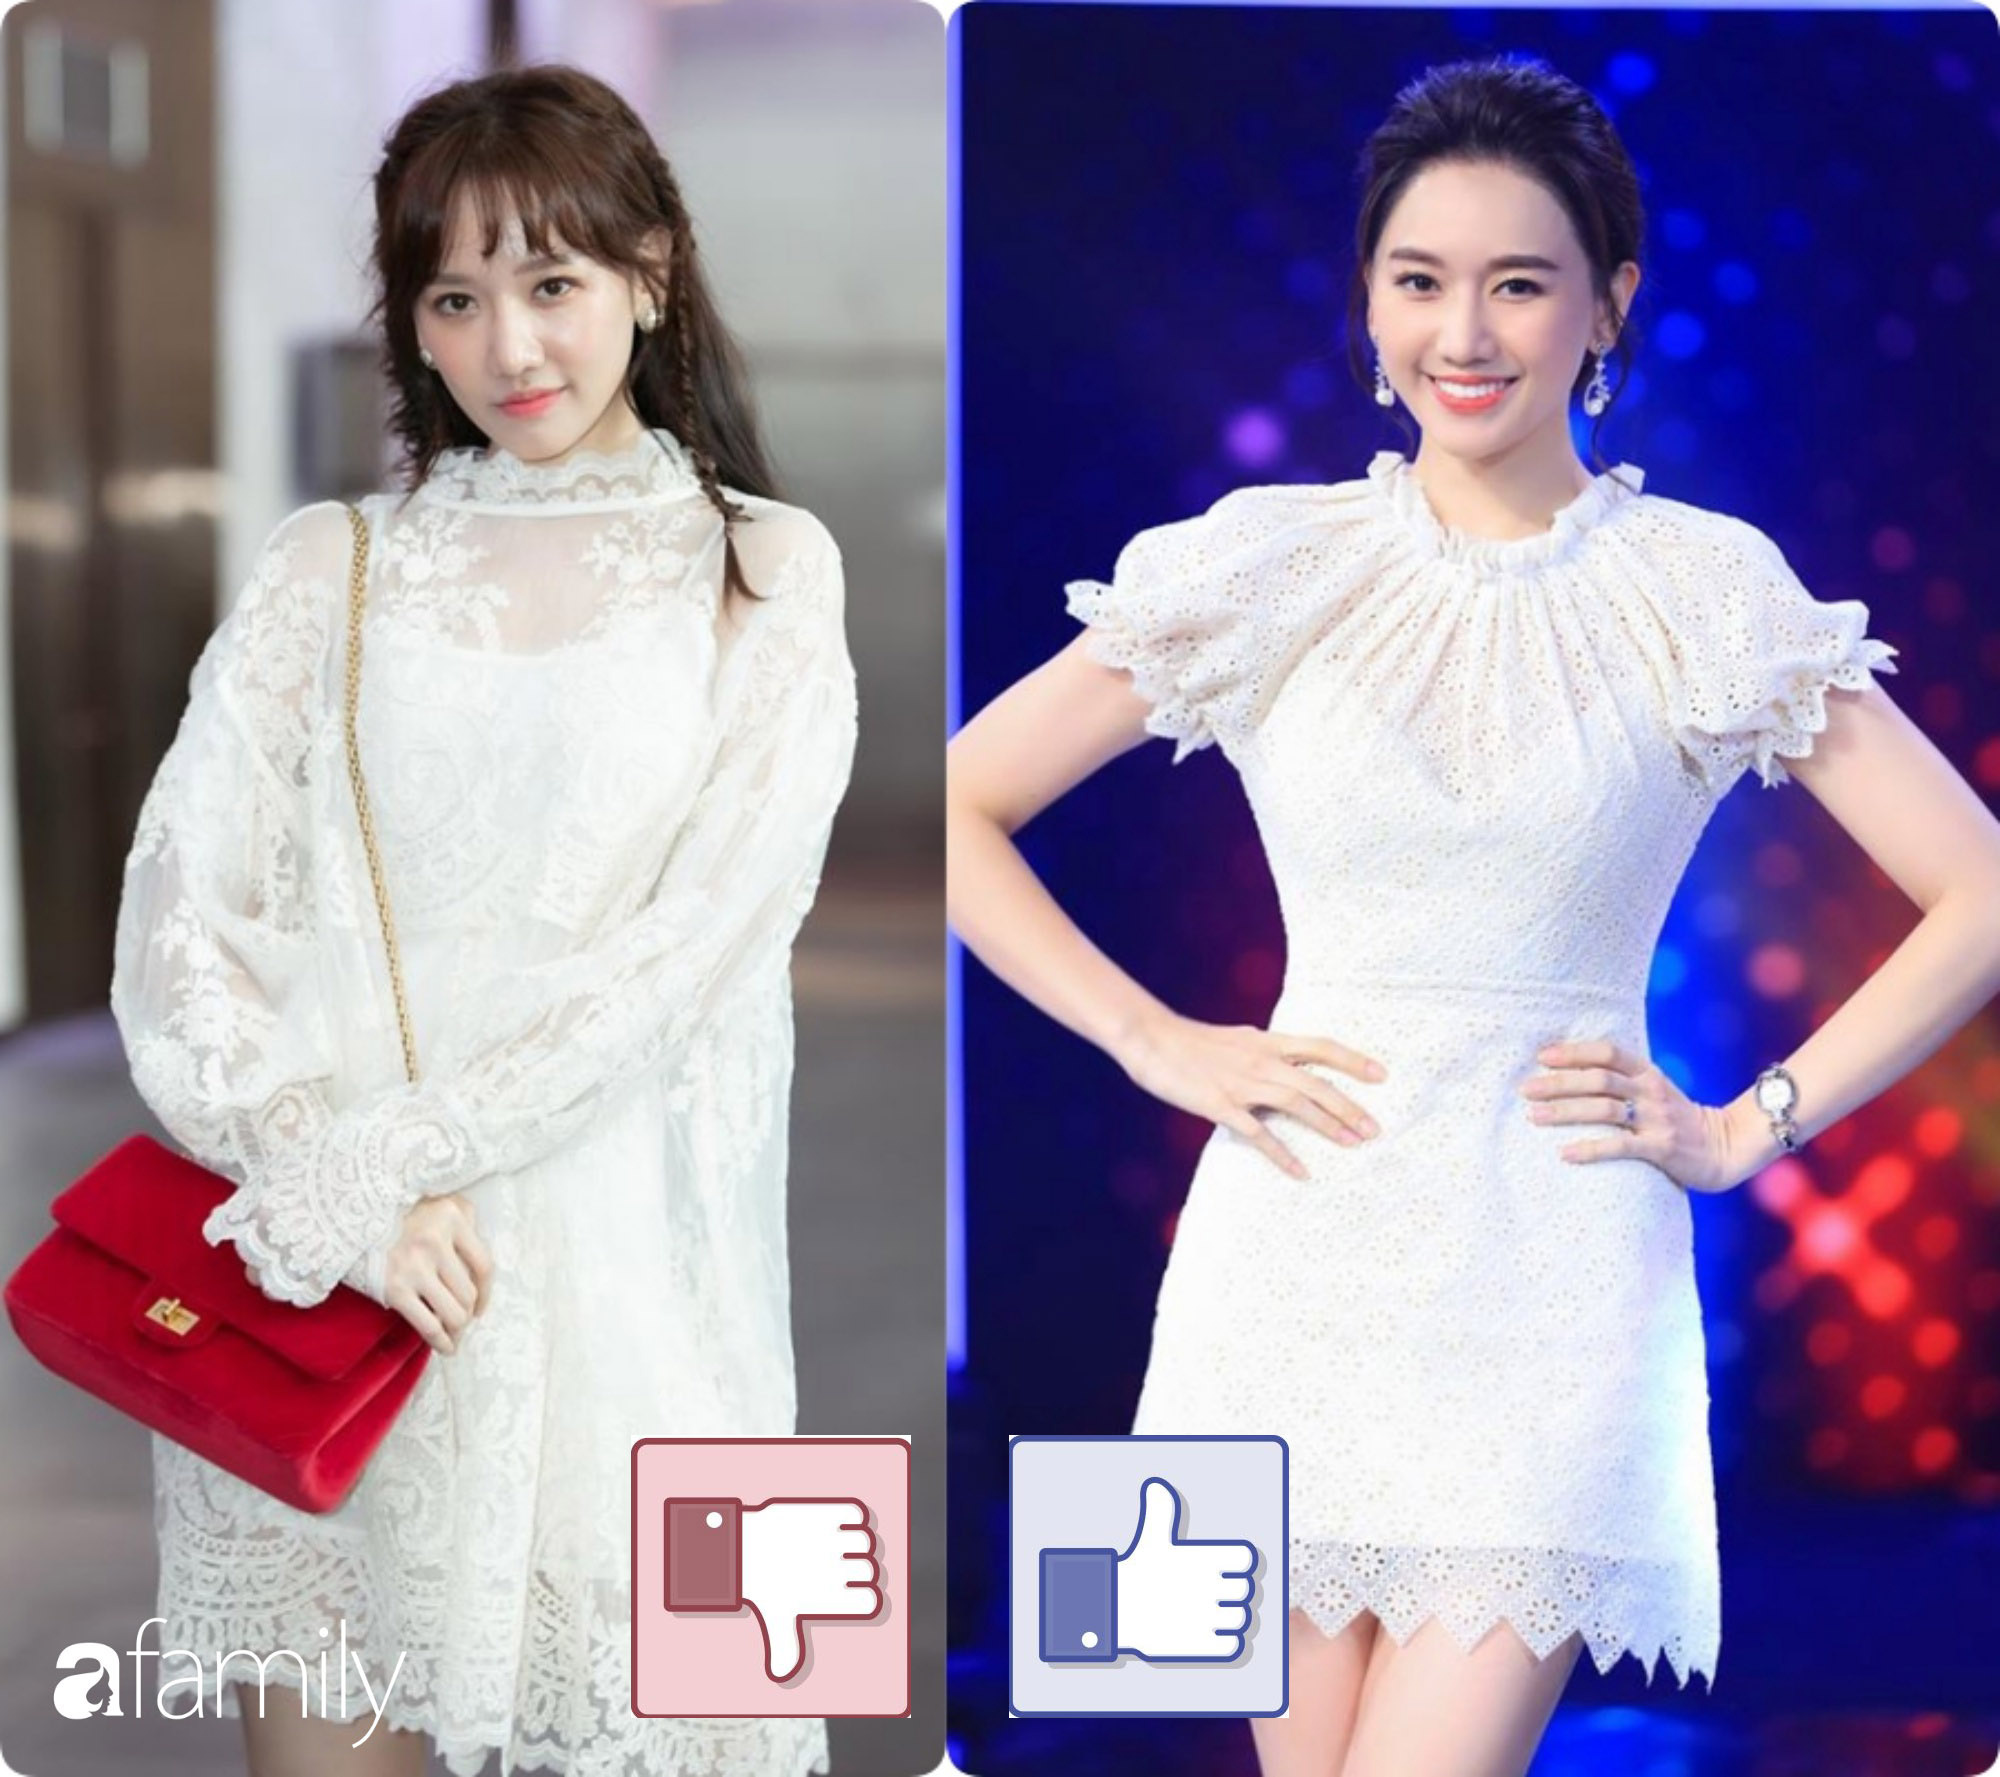  Cũng là một thiết kế váy ren trắng tinh khôi nhưng dáng váy chữ A thắt eo nhẹ nhàng nhìn vóc dáng của Hari Won thon thả, cân đối hơn hẳn. Nhìn Hari cũng cao ráo hơn khi diện thiết kế có đường thắt eo.